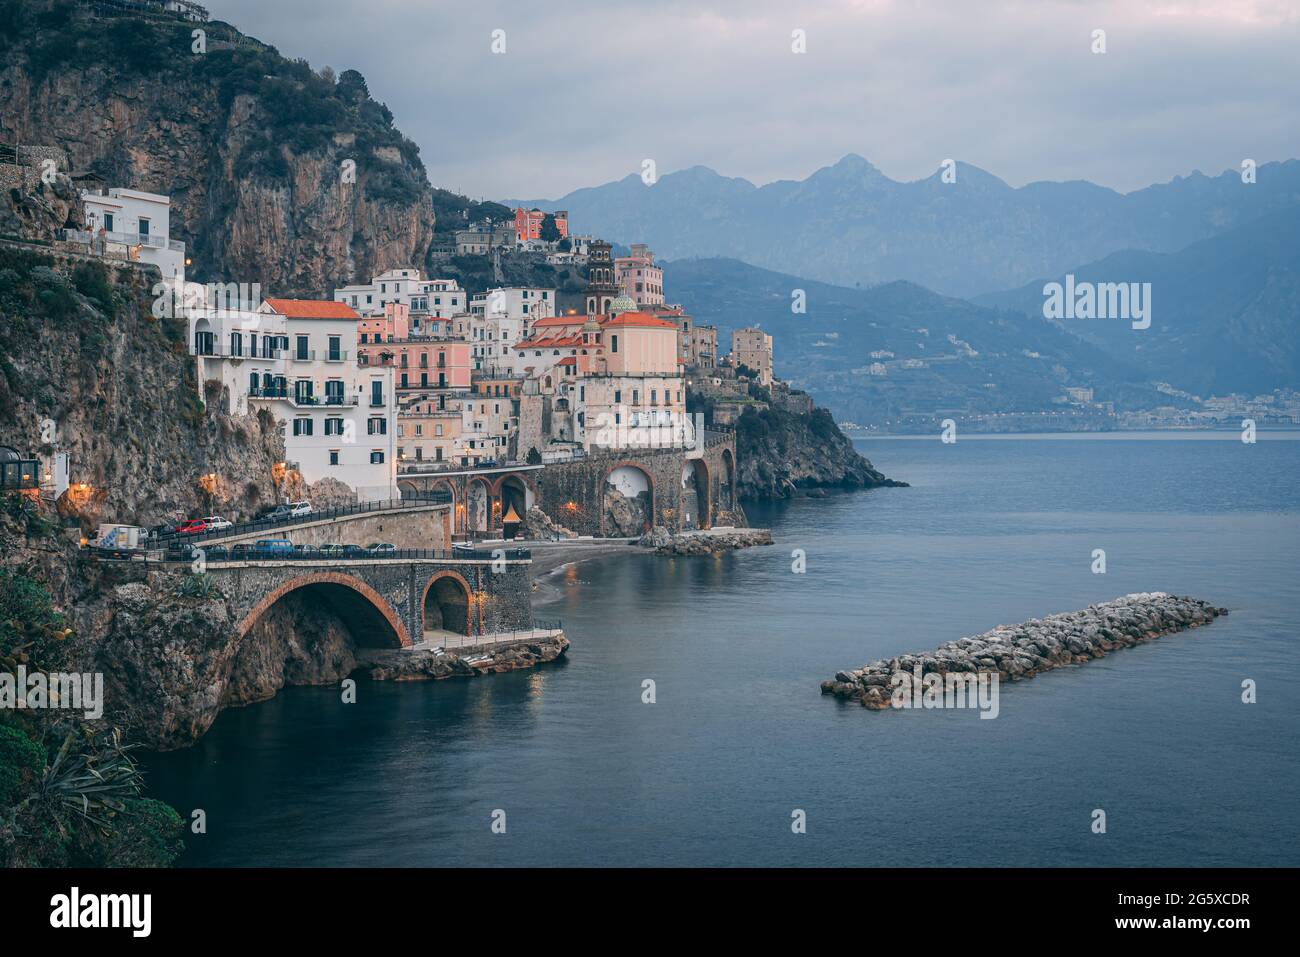 Veduta del paese di Atrani, sulla Costiera Amalfitana in Campania, Italia Foto Stock